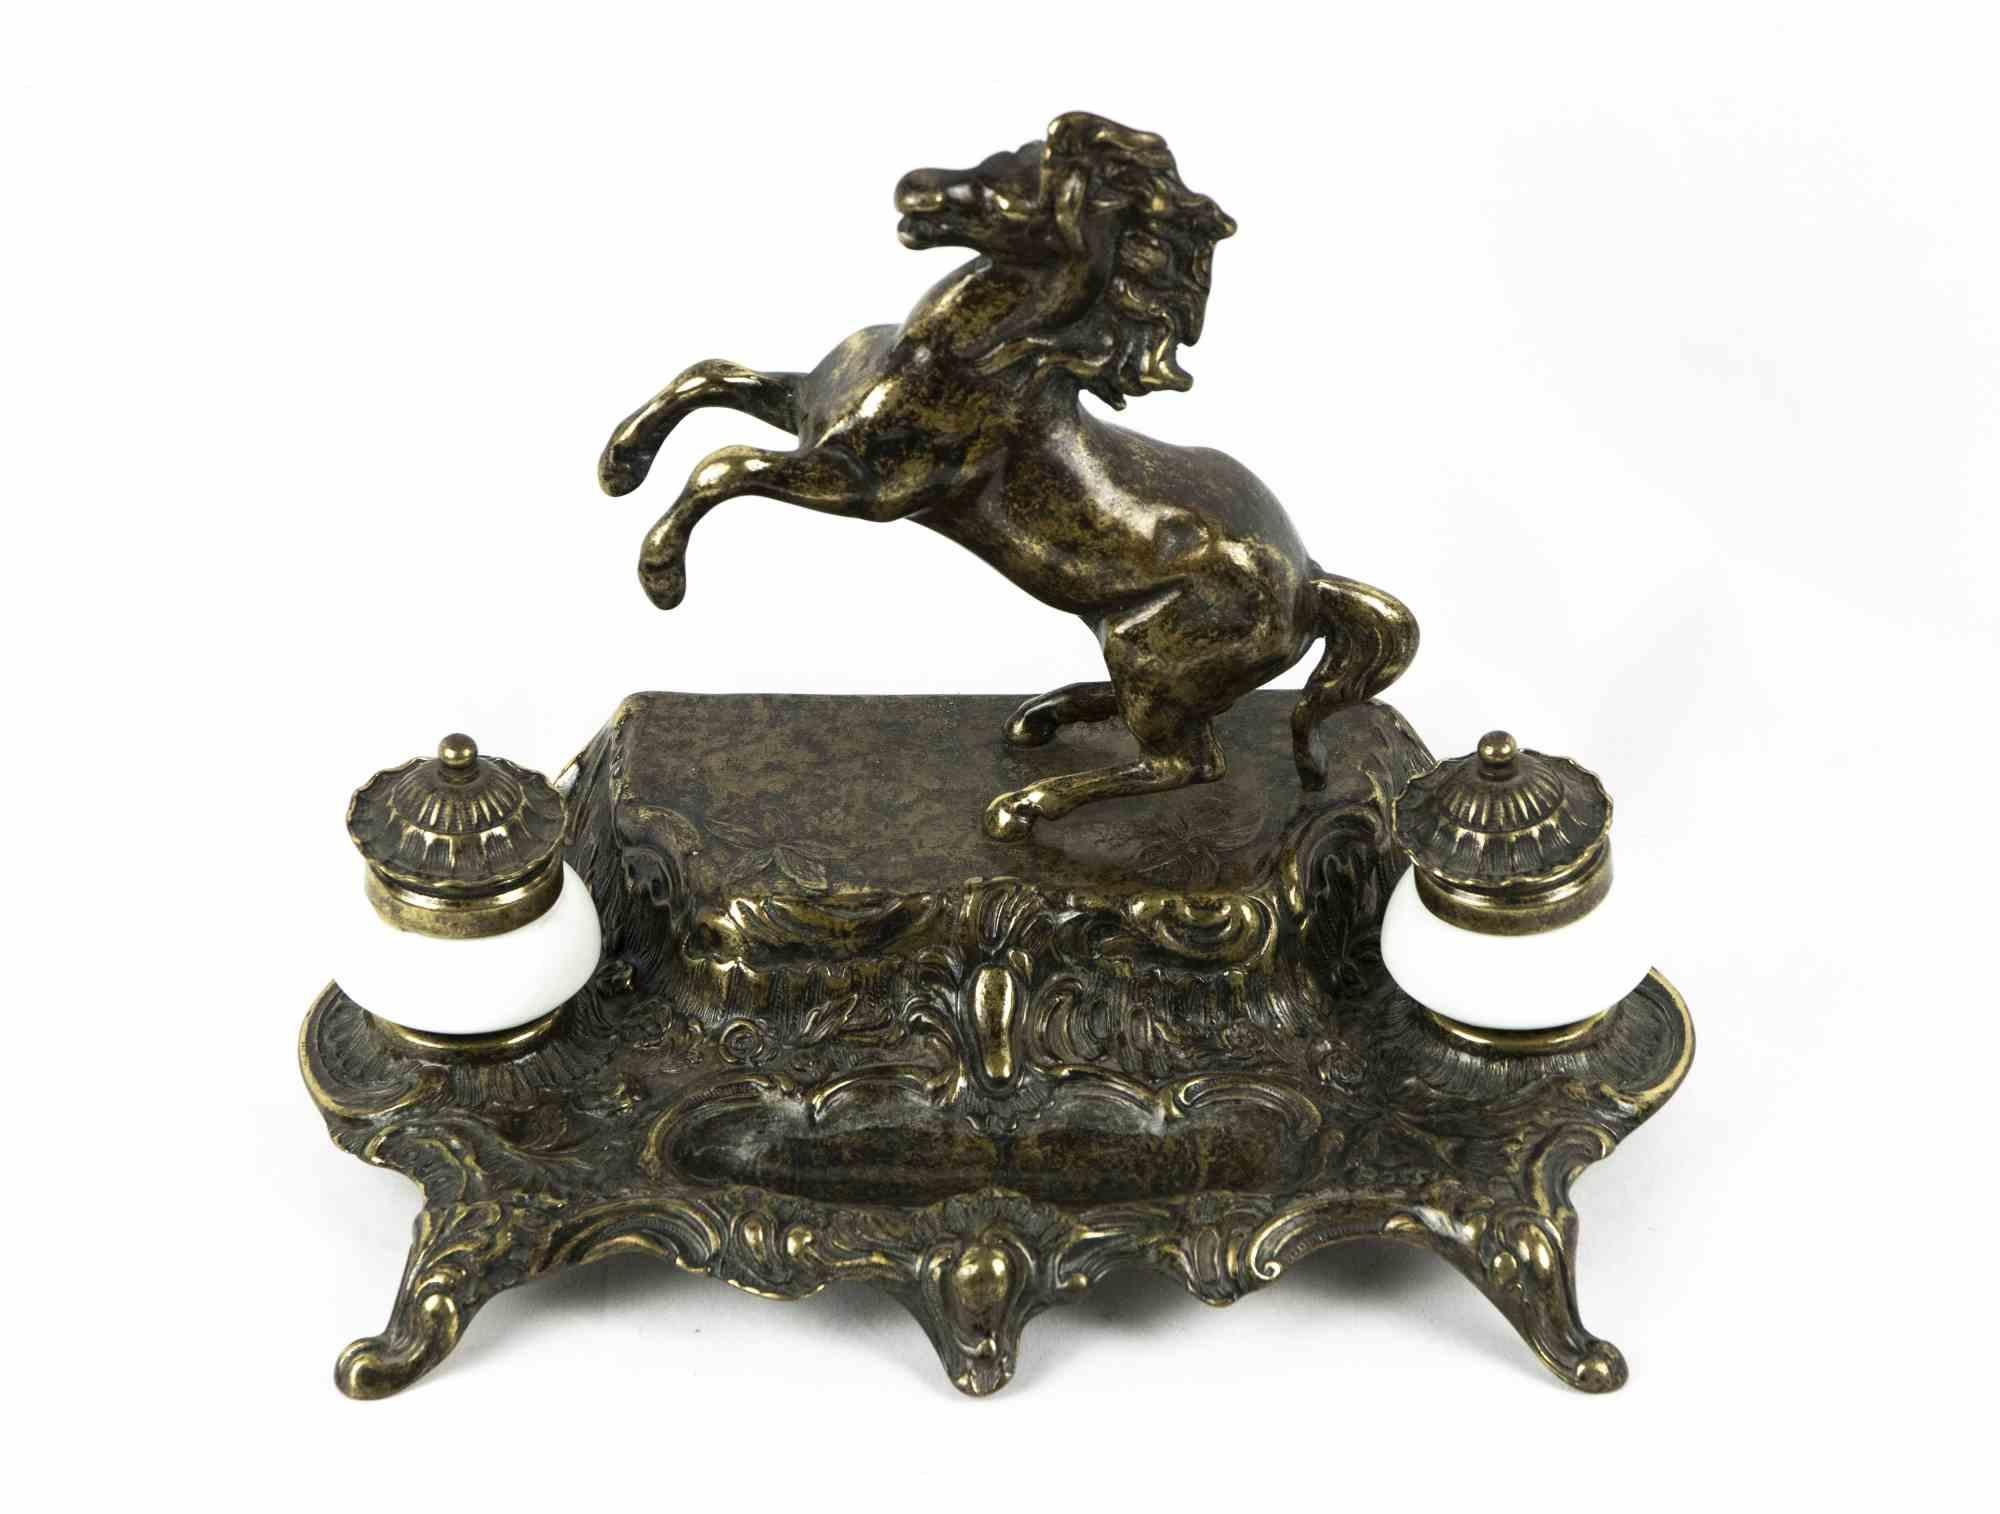 Das Bronze-Tintenfass ist ein originelles Dekorationsobjekt aus der Mitte des 20. Jahrhunderts.

Ein sehr elegantes Bronzetintenfass, das mit einem aufsteigenden Pferd verziert ist. Enthält ein paar Tintenfässer.